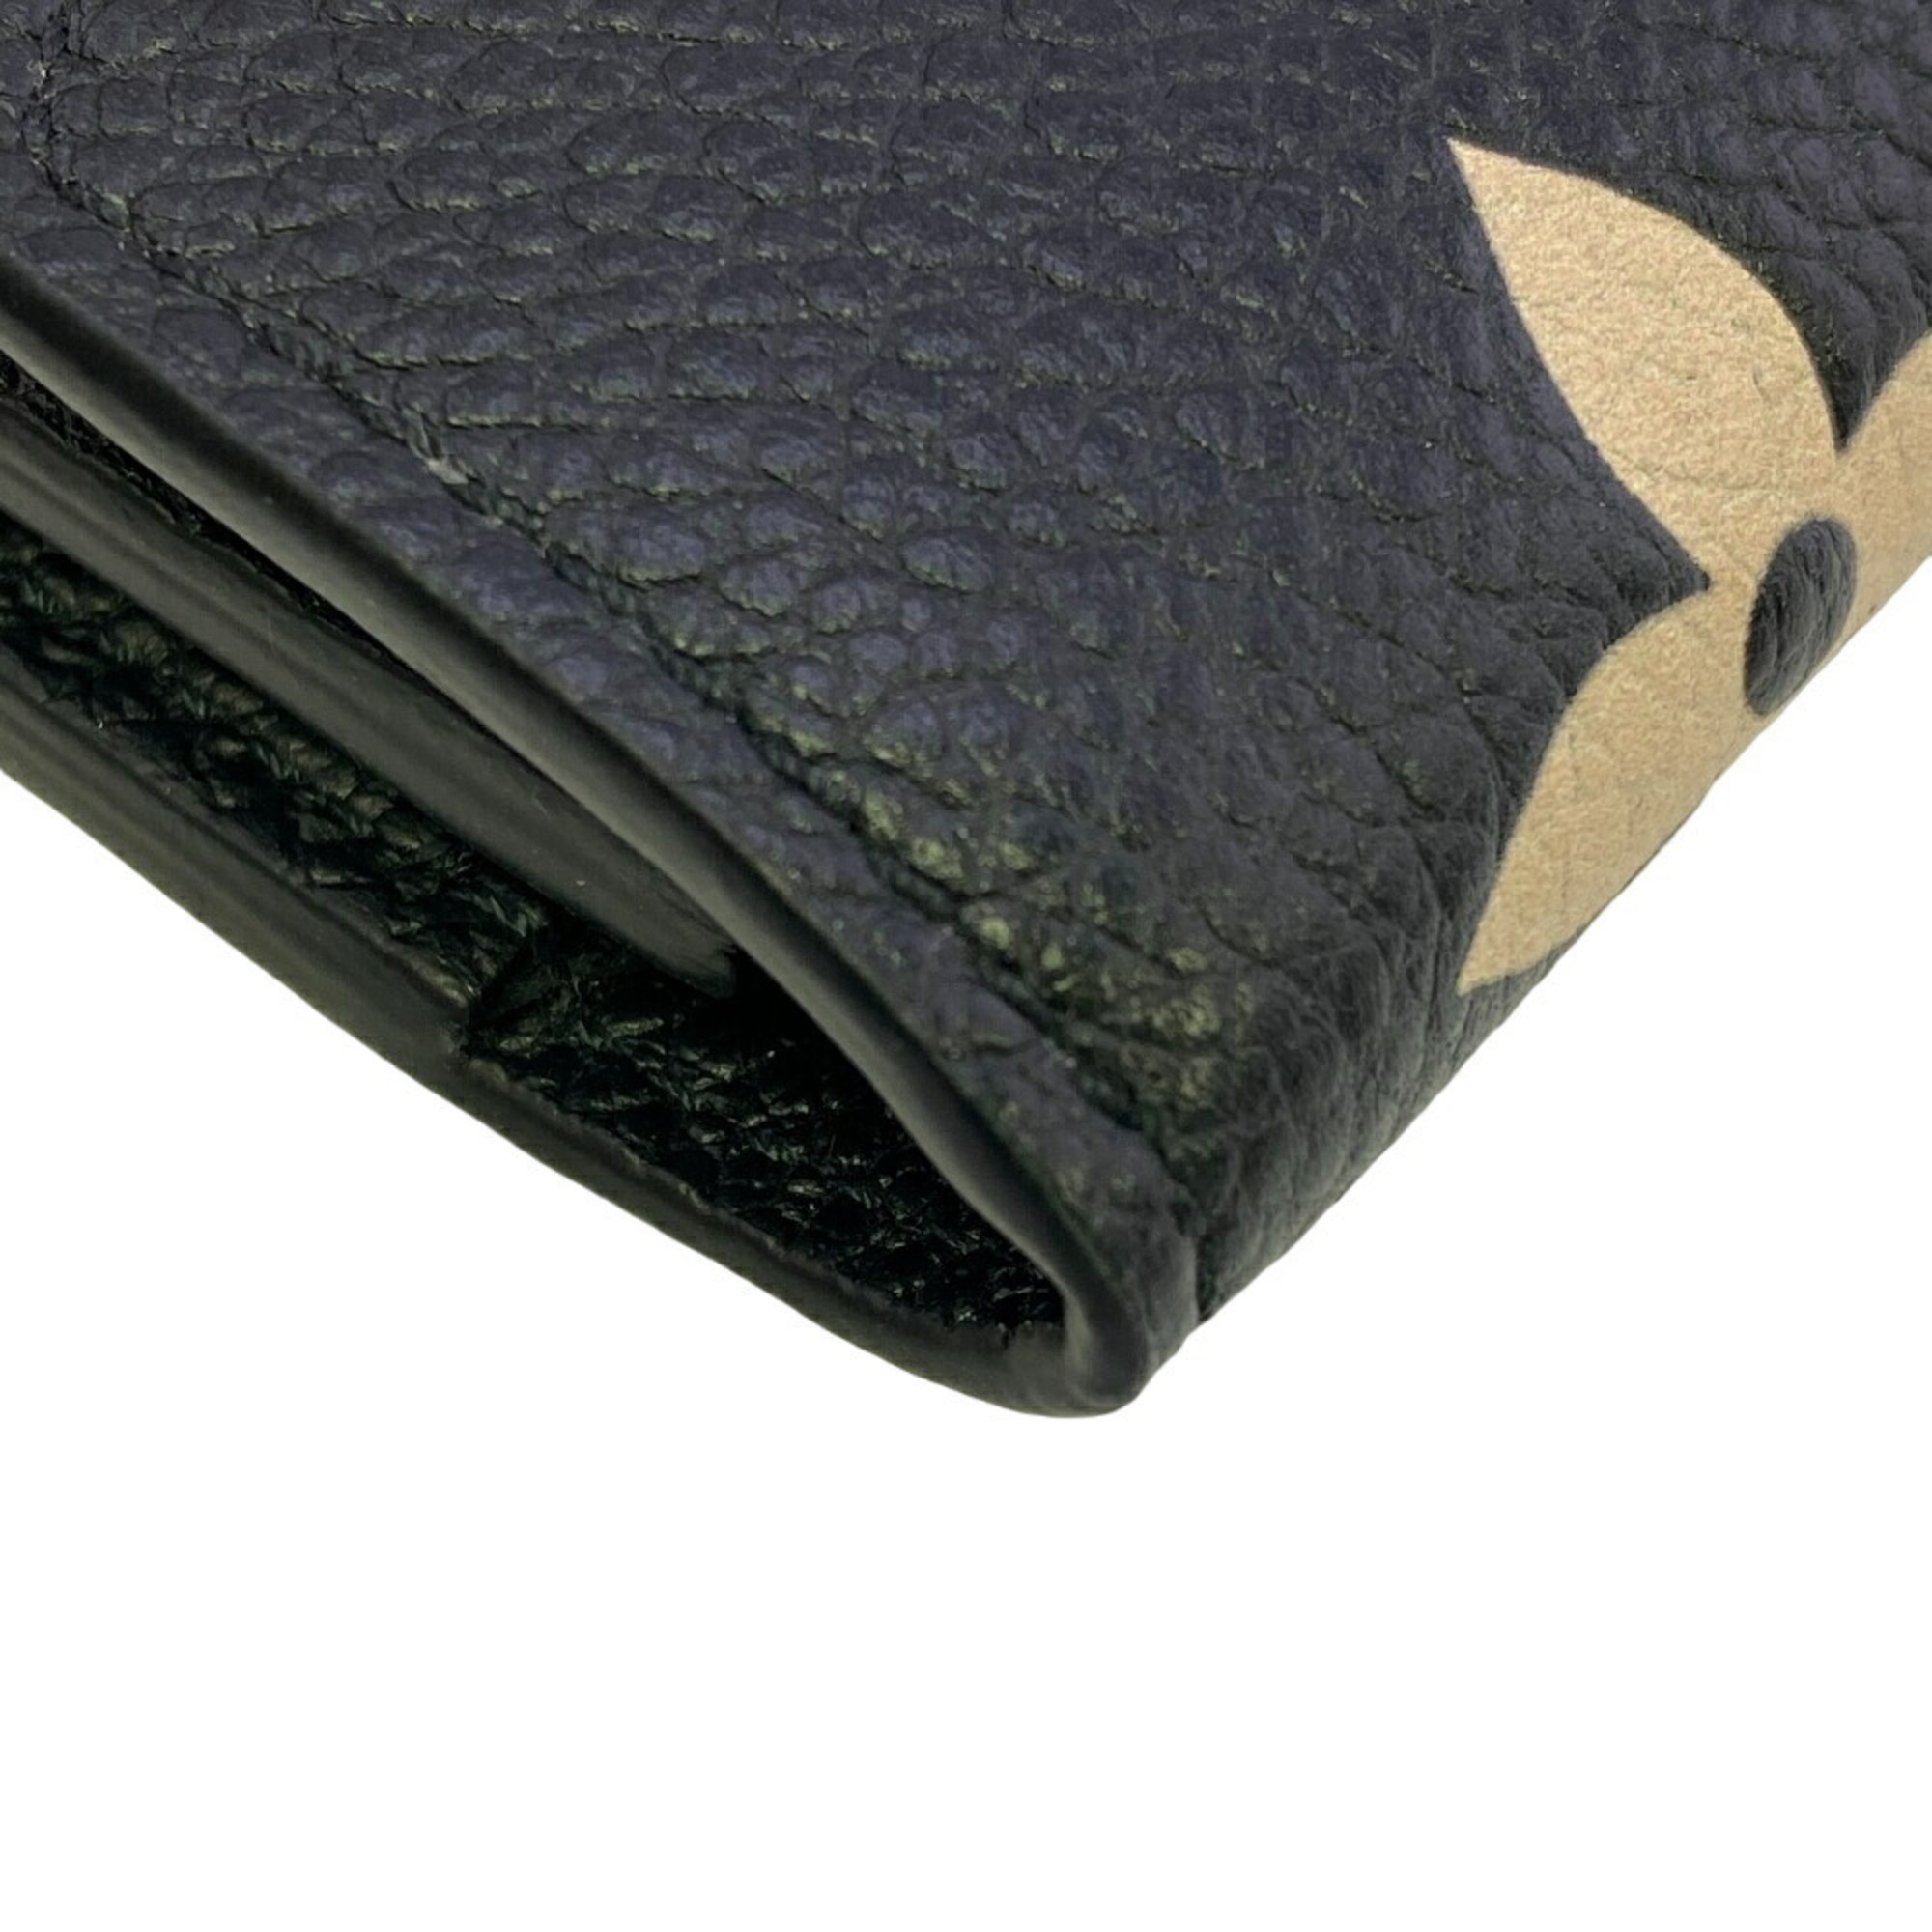 LOUIS VUITTON M80968 Portefeuille Victorine Compact Wallet Monogram Empreinte Tri-fold Black Women's